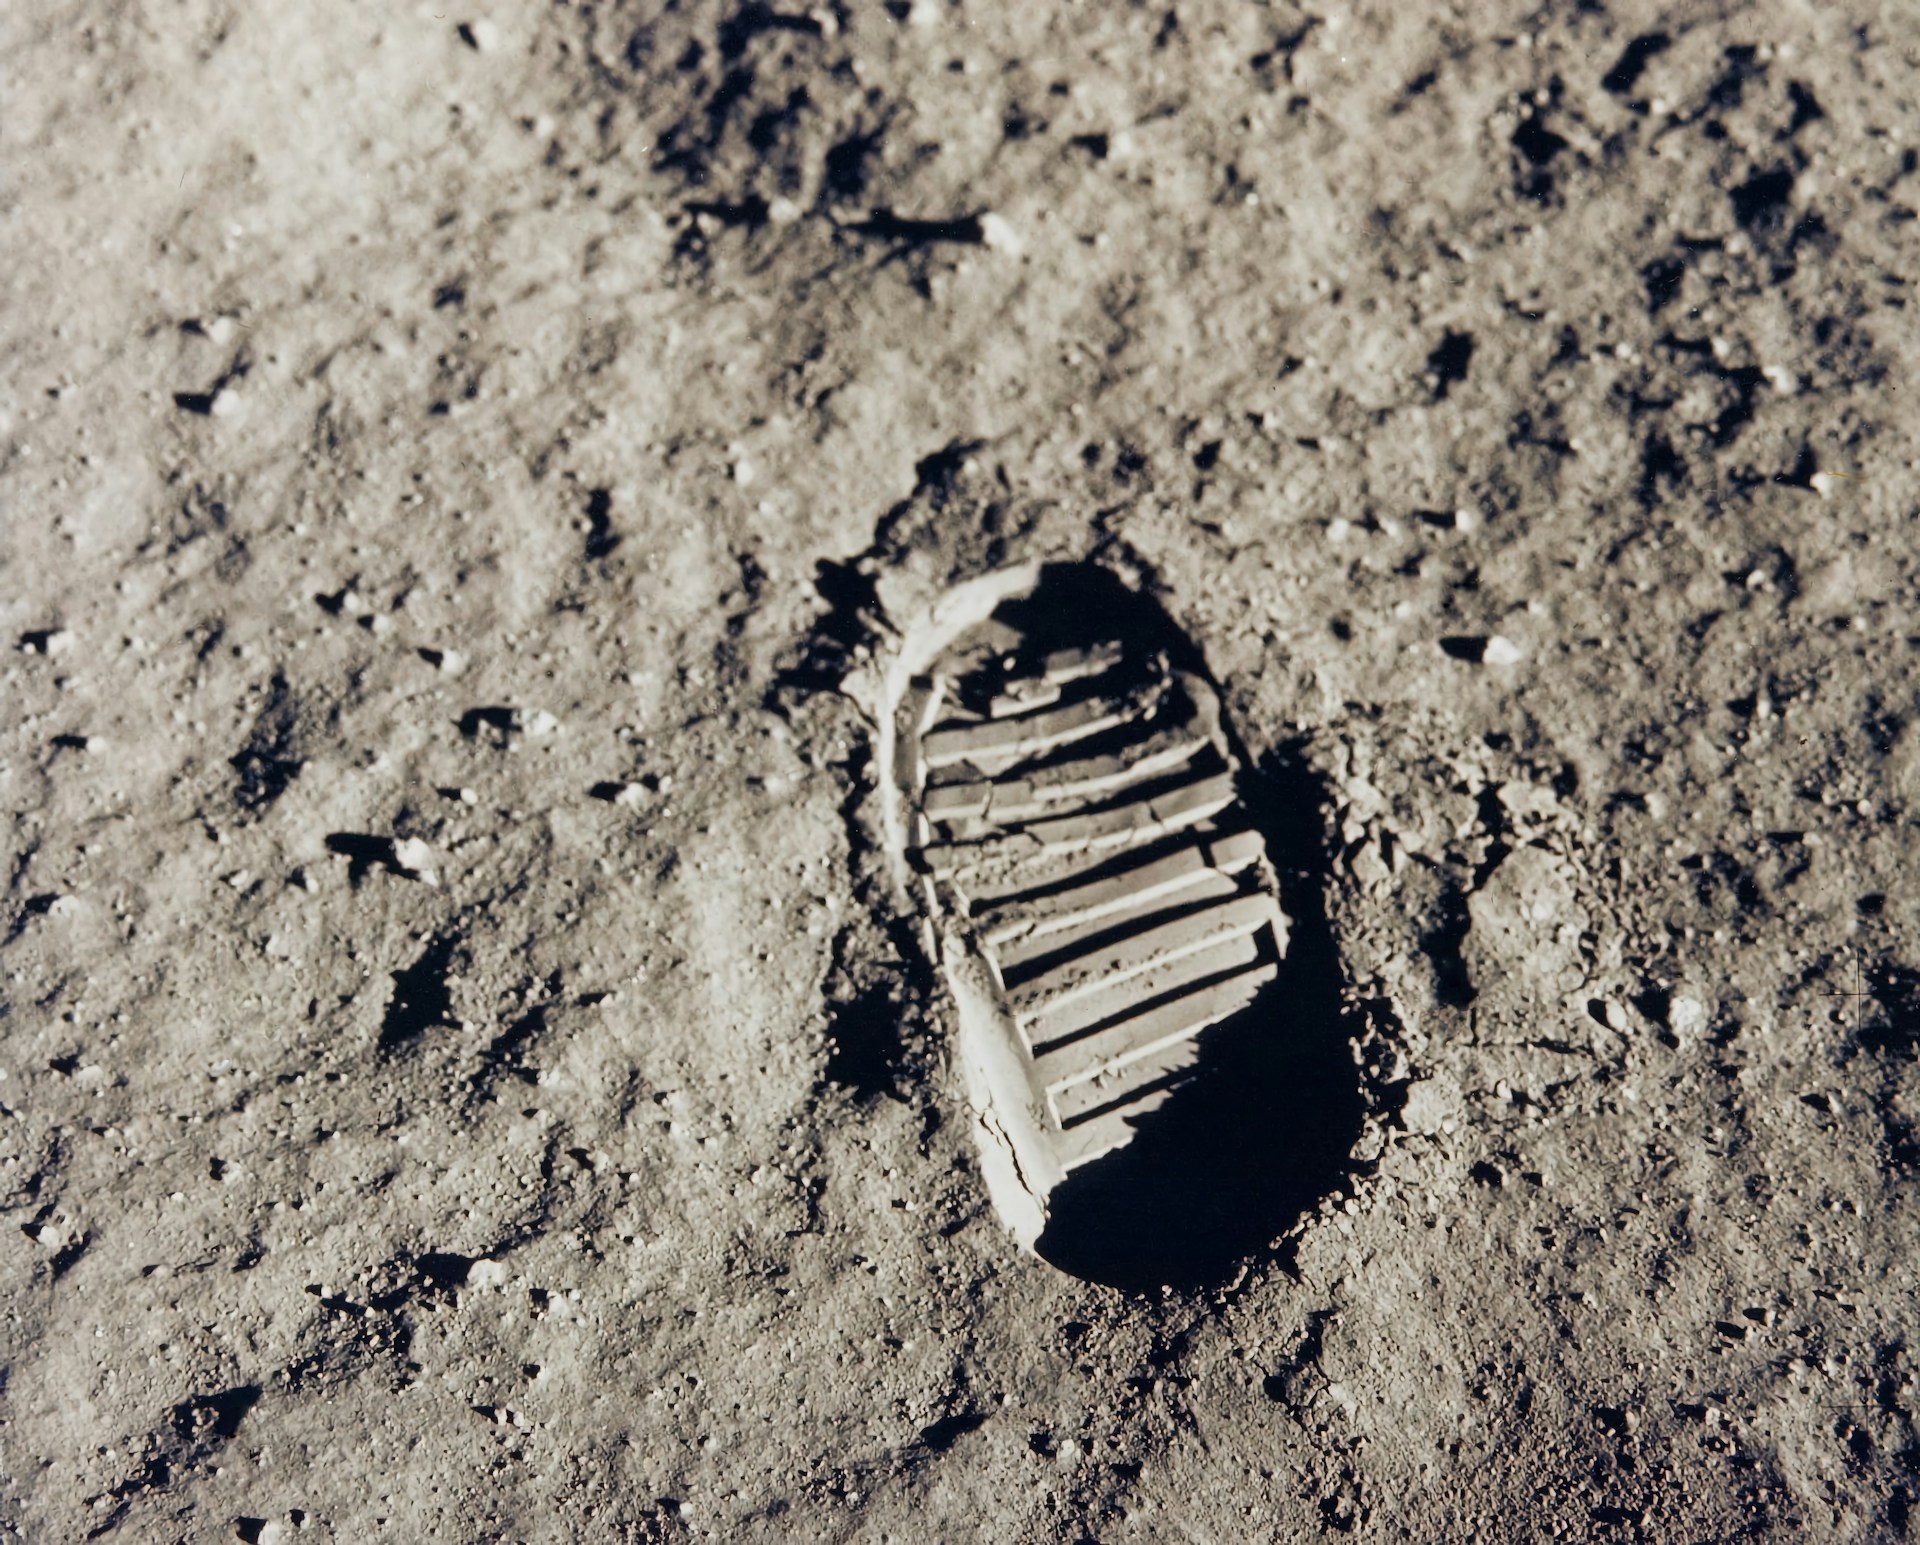 Вид вблизи следа ботинка астронавта Базза Олдрина на лунном реголите, сфотографированного 70-мм камерой на поверхности Луны во время миссии Apollo 11